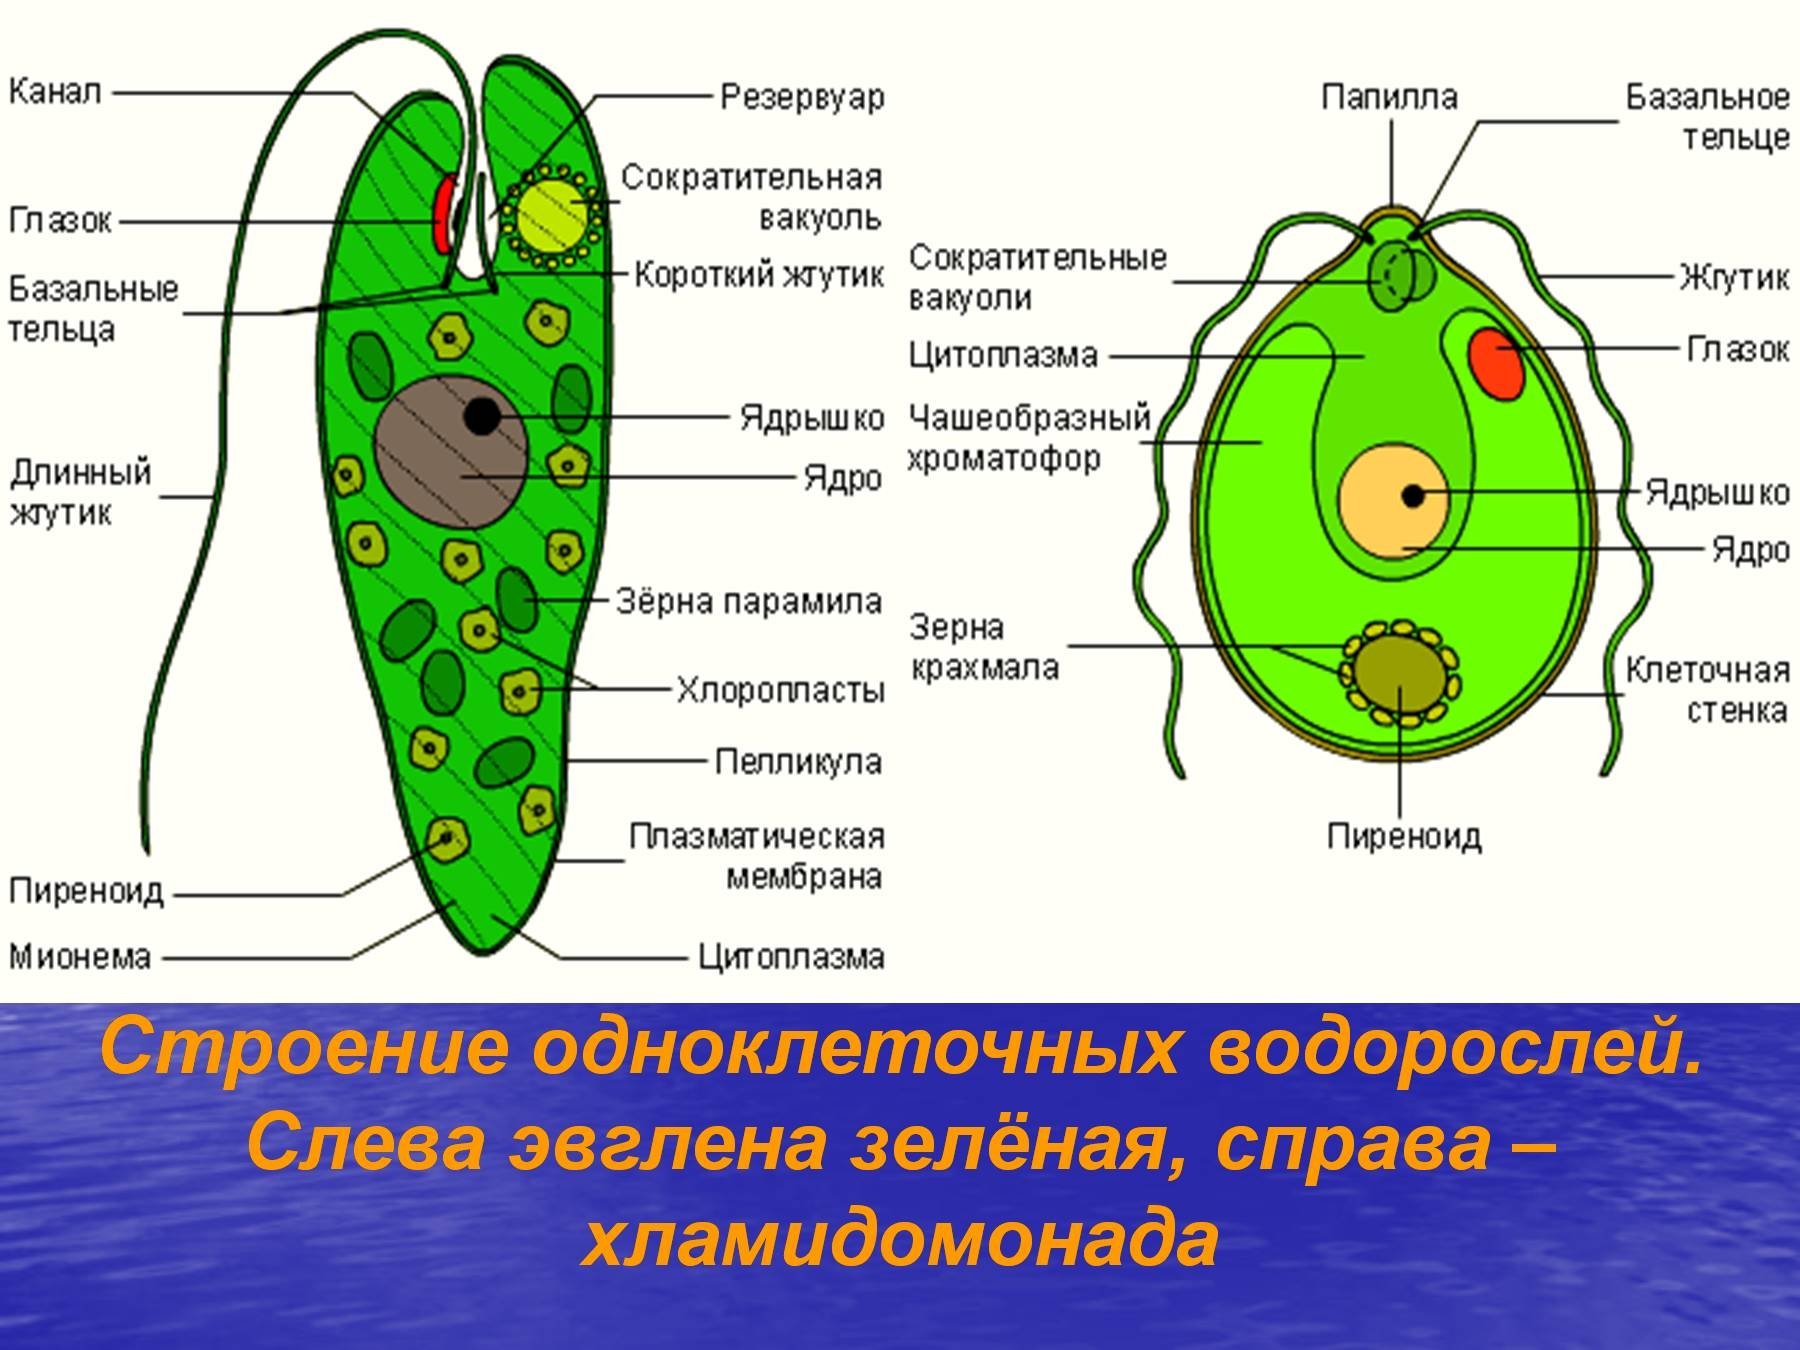 Клетка бурой водоросли. Биология строение одноклеточных водорослей. Строение клетки одноклеточных. Рисунок одноклеточной водоросли хламидомонады. Эвглена зеленая водоросль.